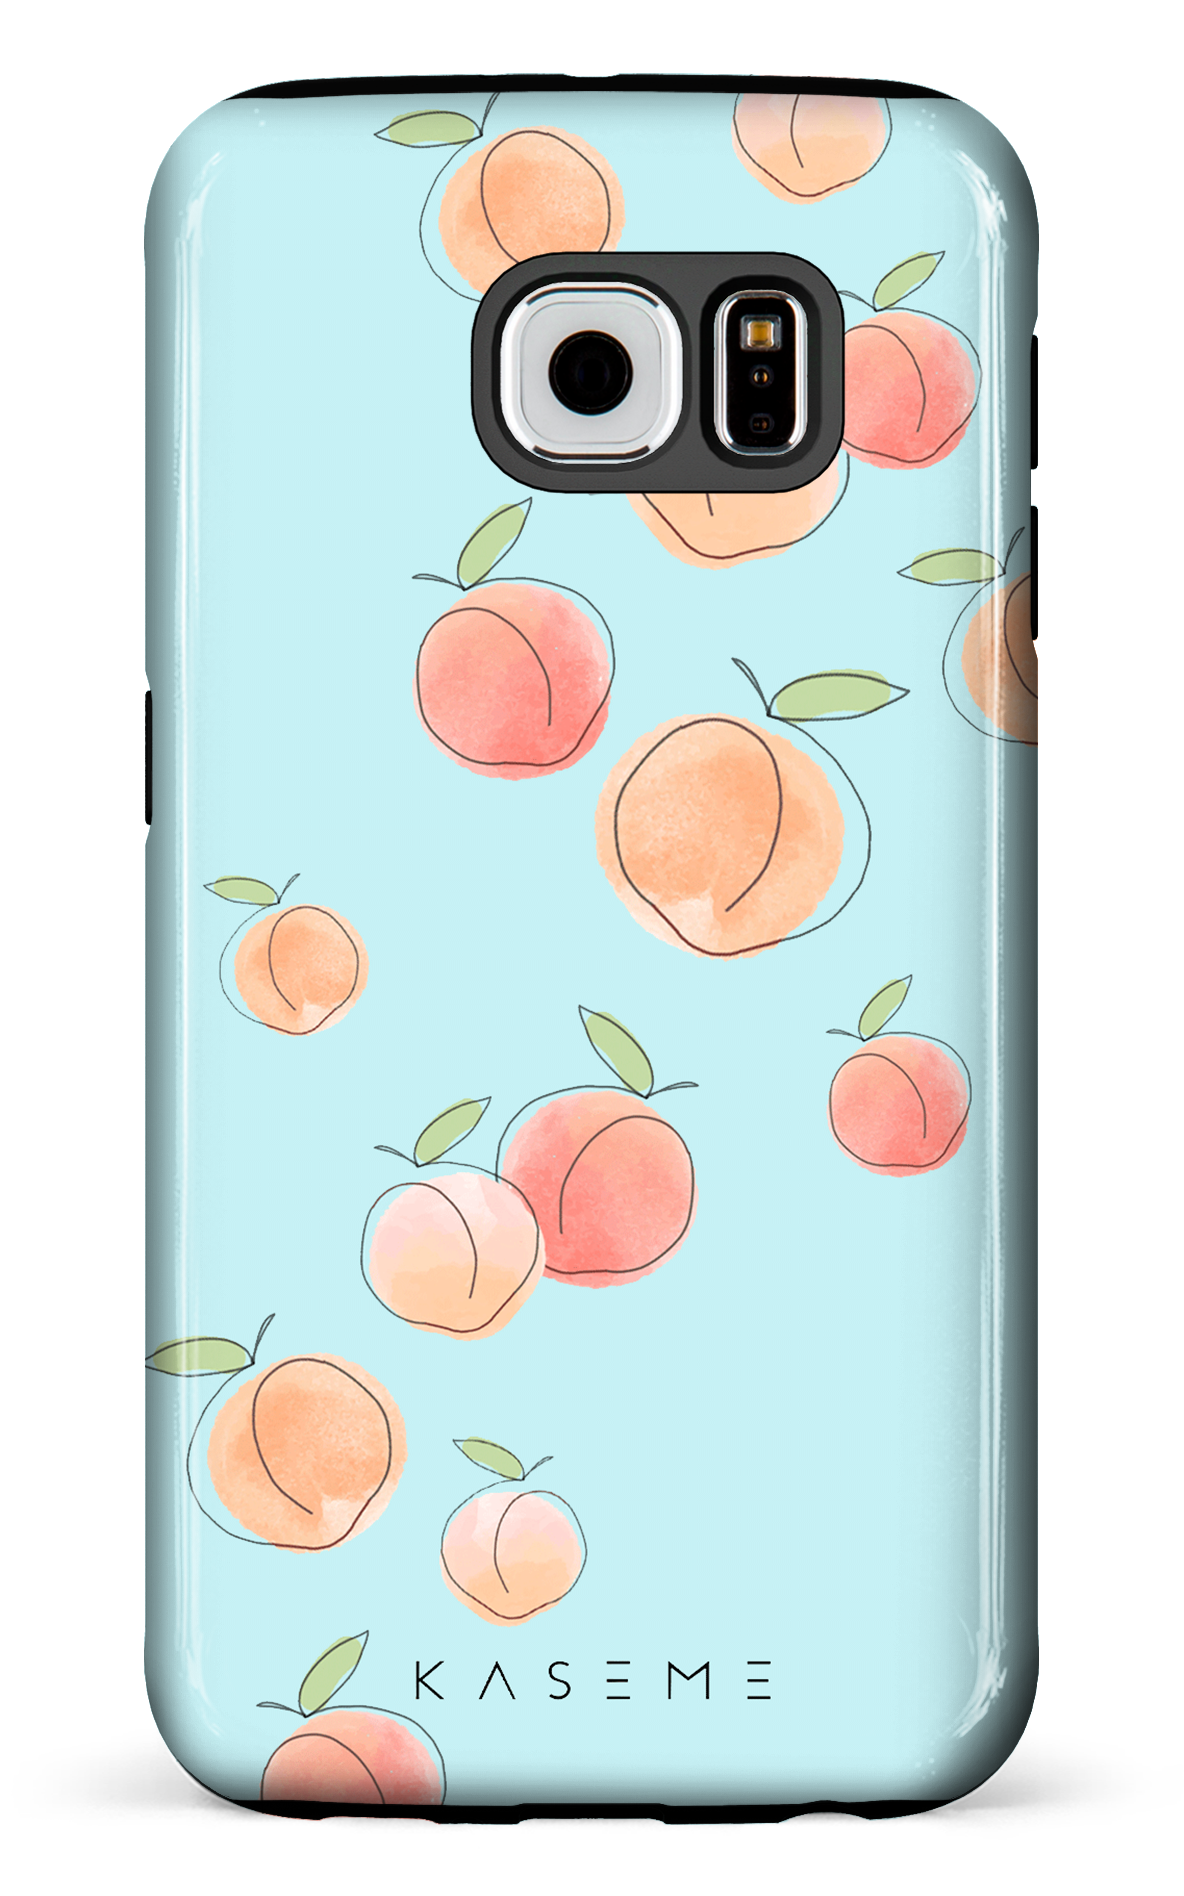 Peachy Blue - Galaxy S6